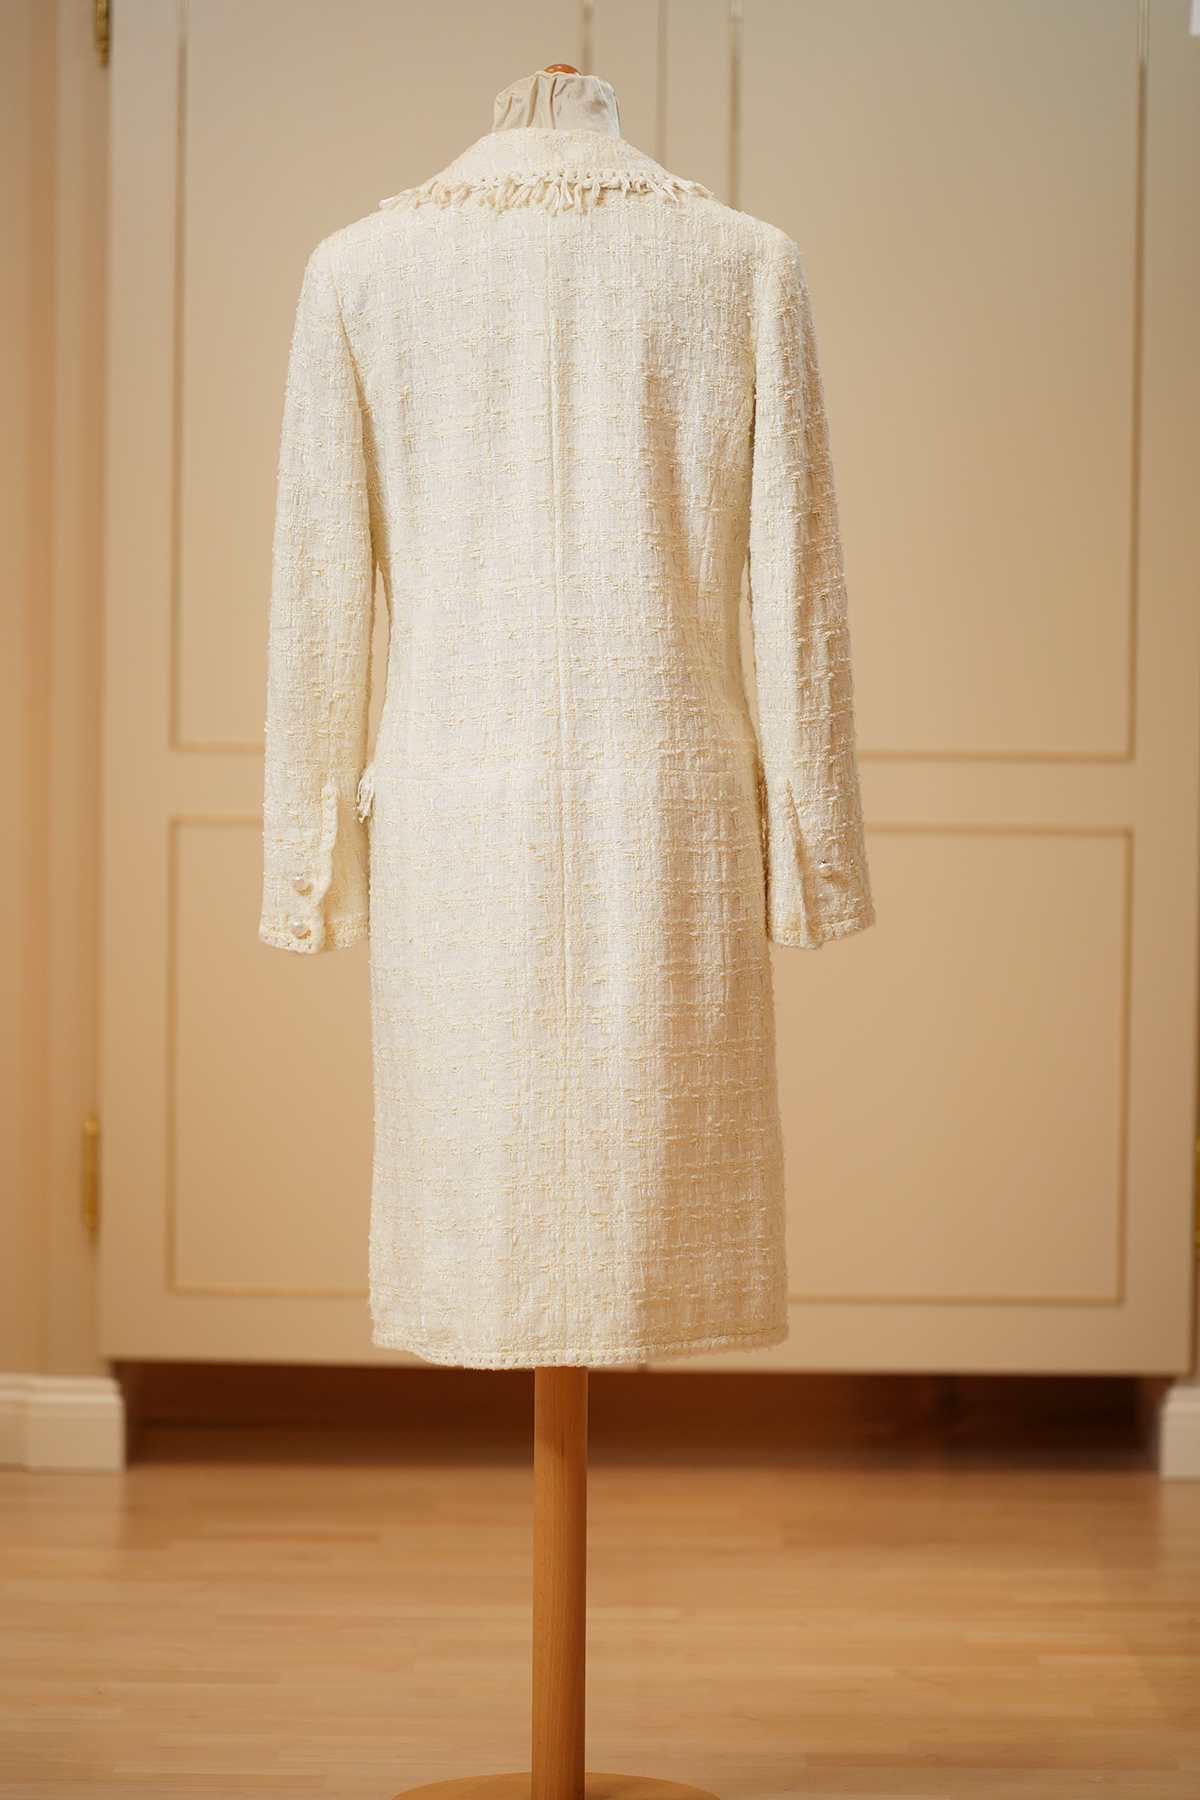 CHANEL – Tweed Midi Kleid (Jackenkleid) -  beige – Gr. 38 FR – neuwertig